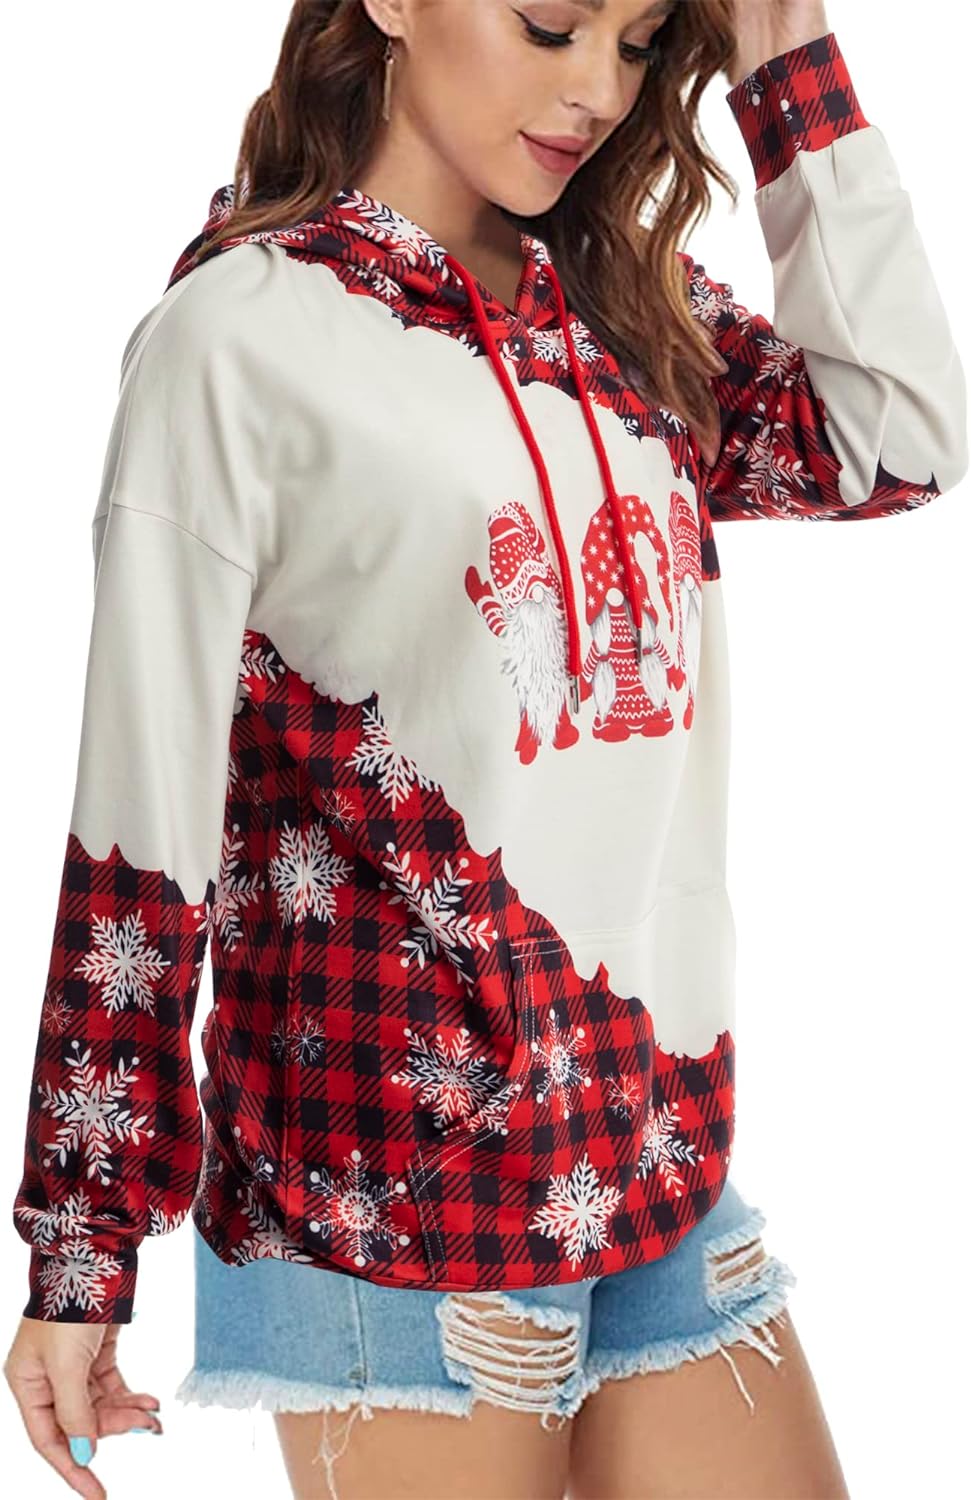 ALLTB Christmas Hoodie for Women Gnomes Buffalo Plaid Sweatshirt Tops Snowflake Tree Print Long Sleeve Shirt with Pocket